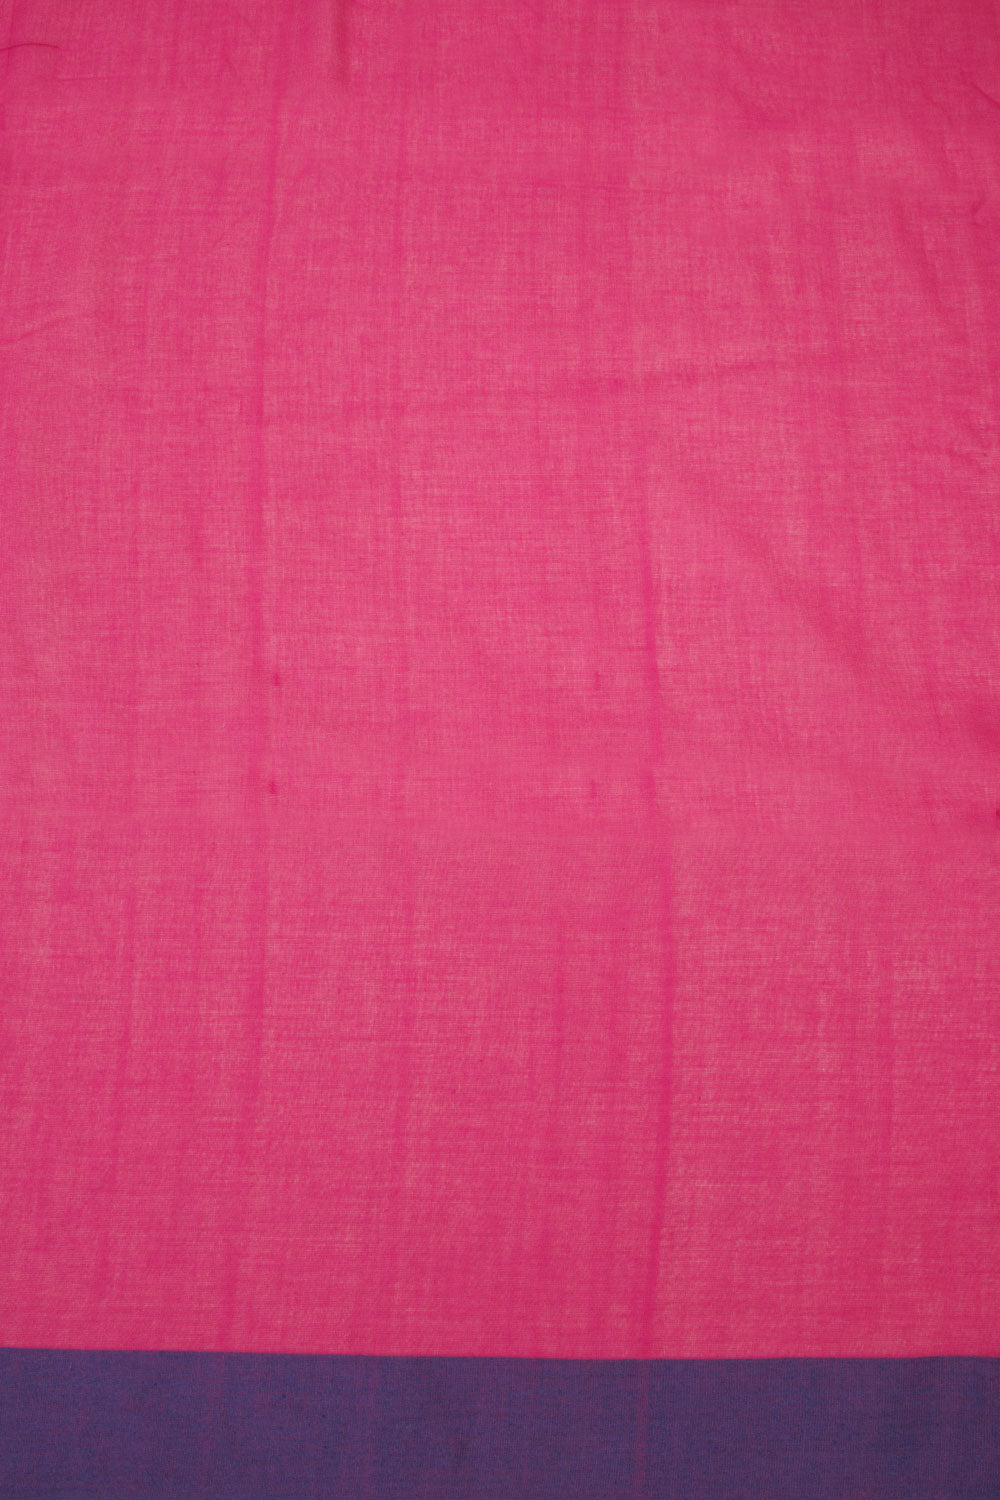 Pink Bengal Cotton Saree - Avishya